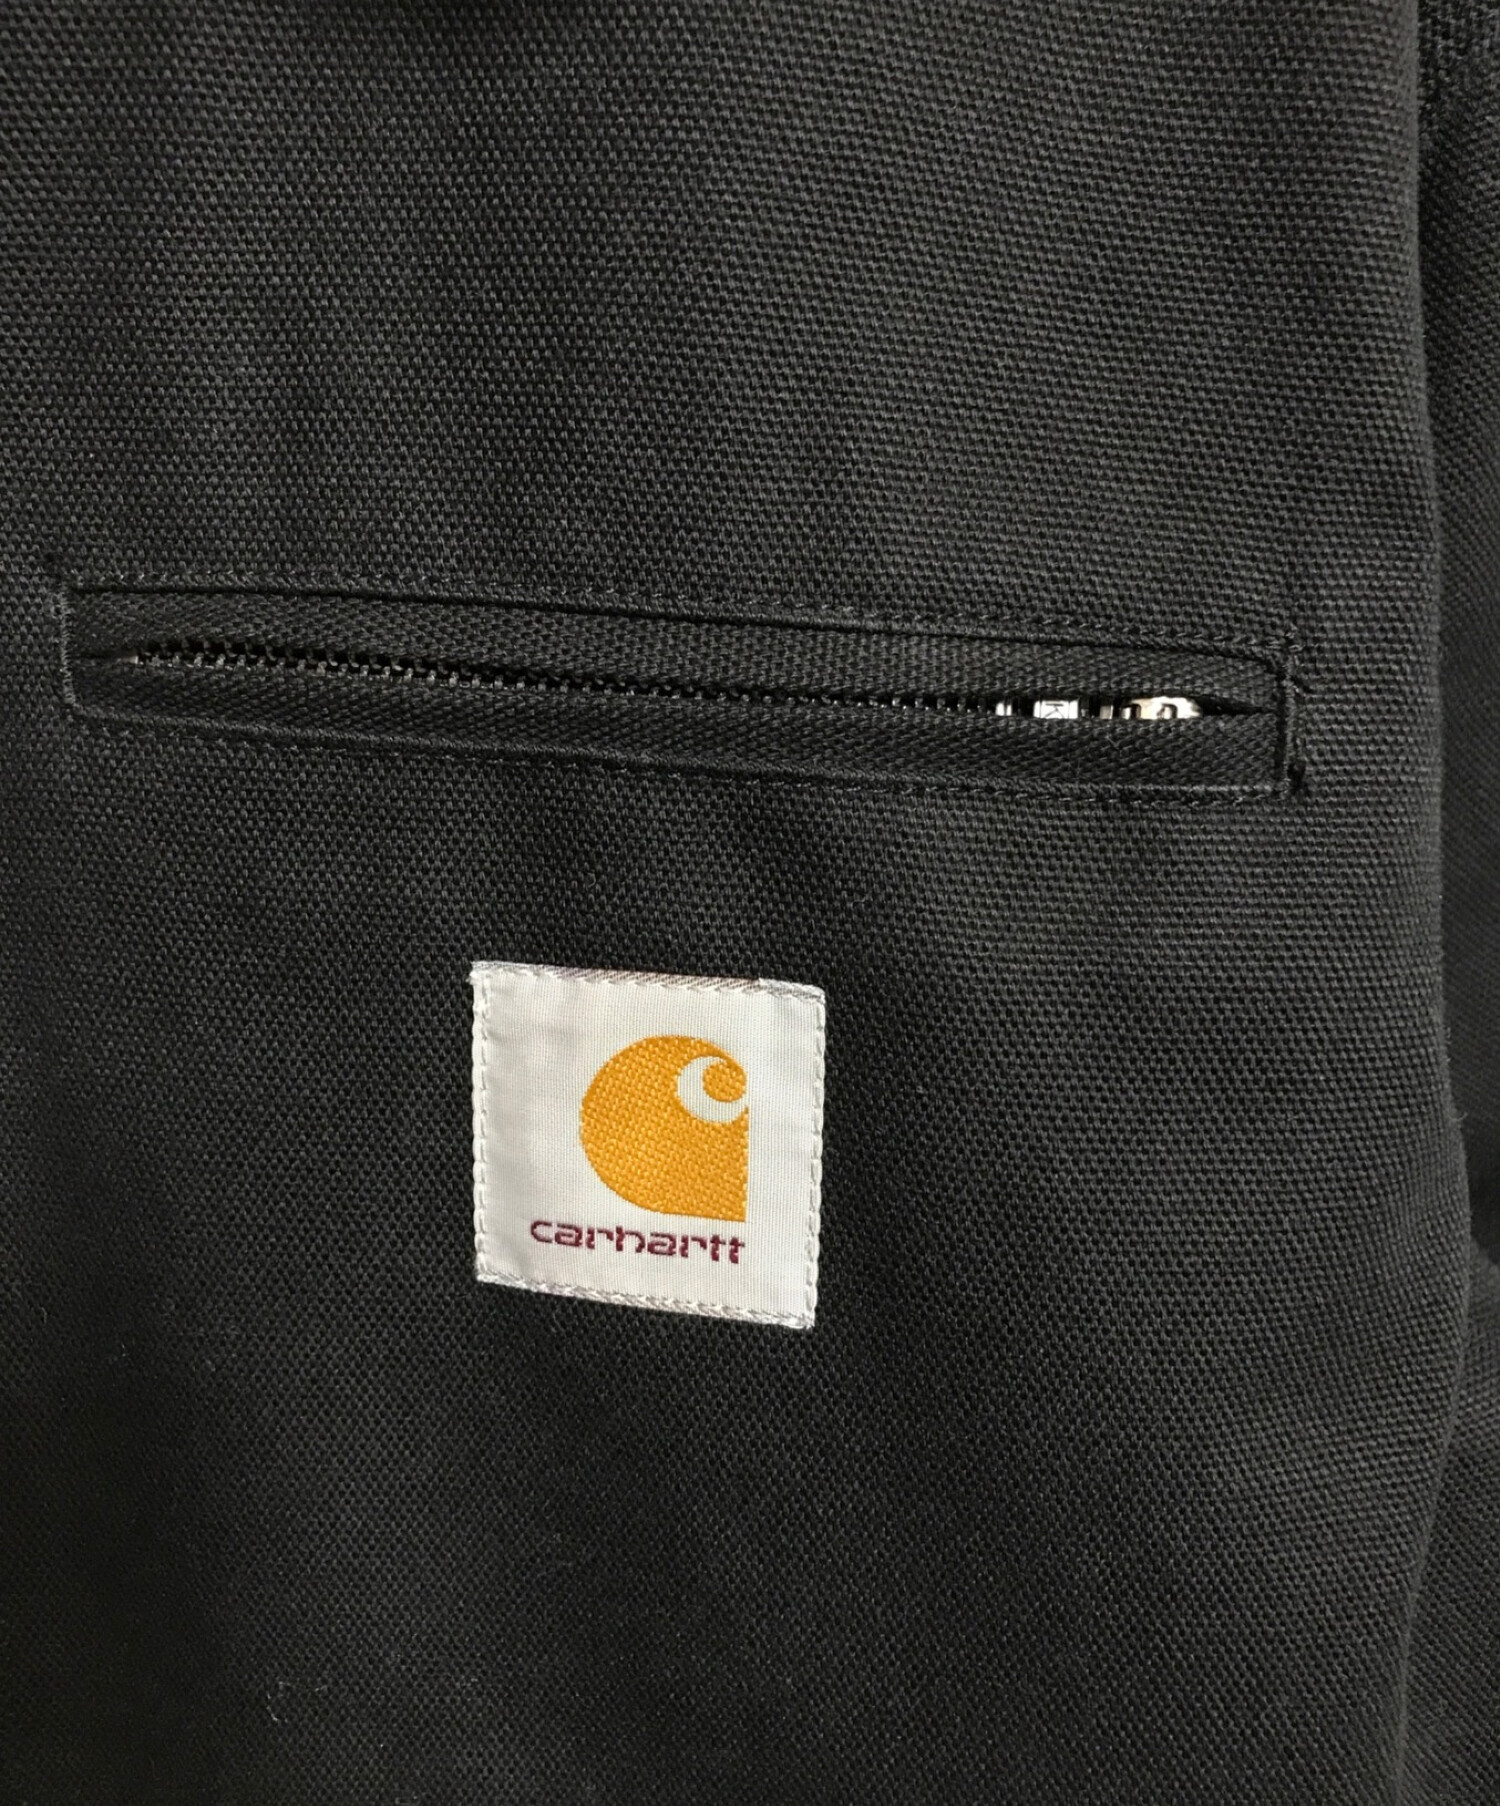 CarHartt (カーハート) デトロイトジャケット ブラック サイズ:M